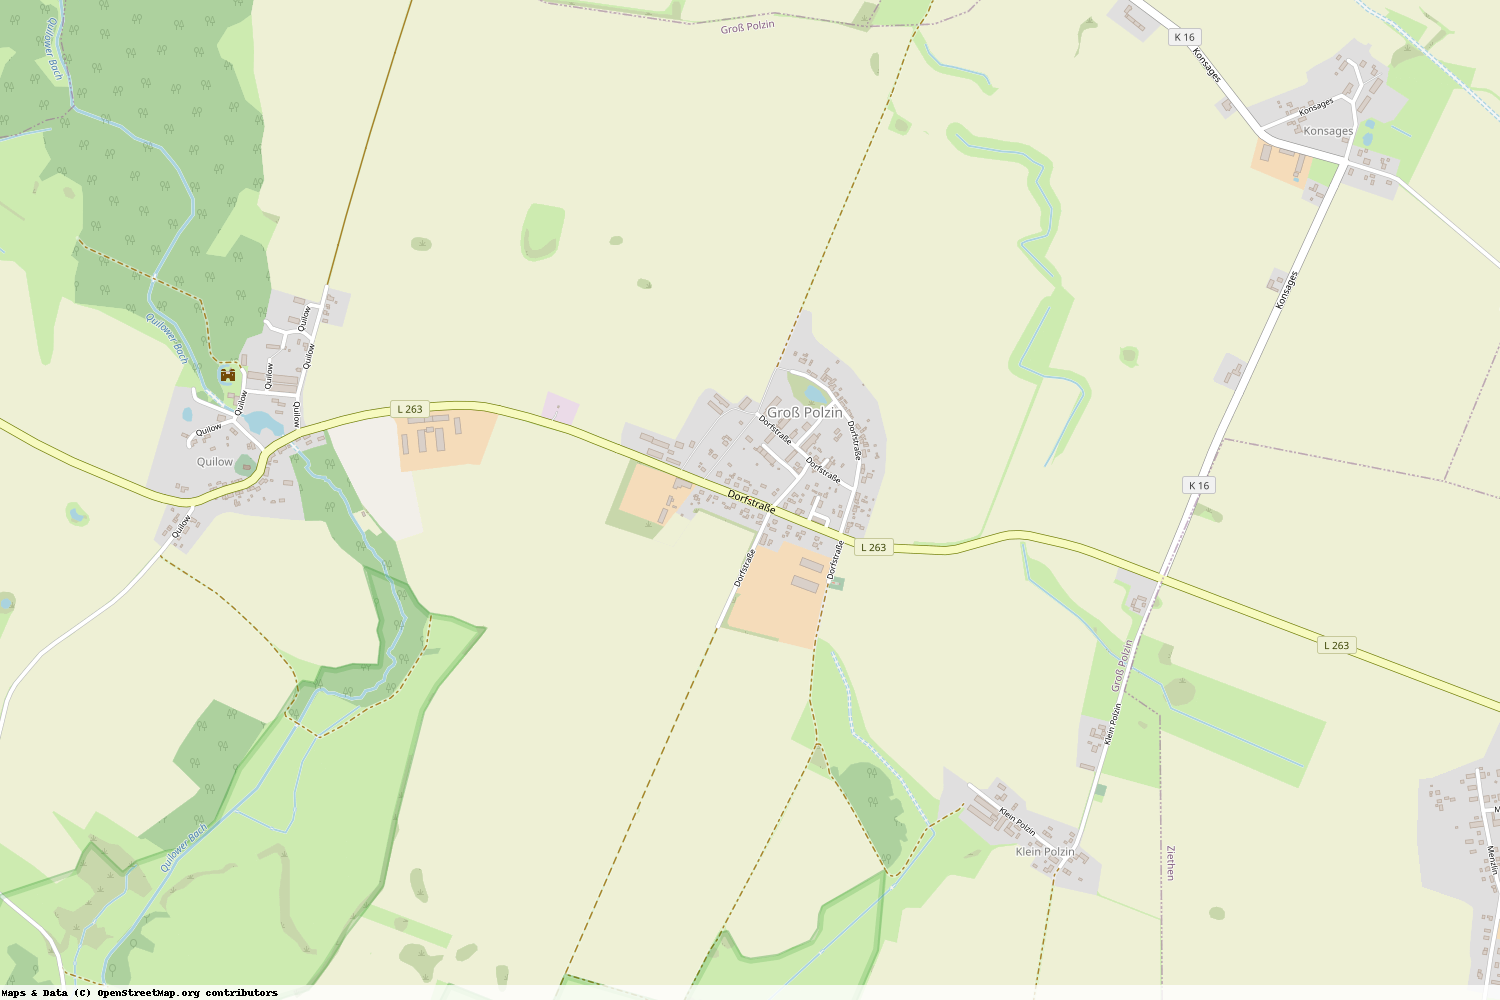 Ist gerade Stromausfall in Mecklenburg-Vorpommern - Vorpommern-Greifswald - Groß Polzin?